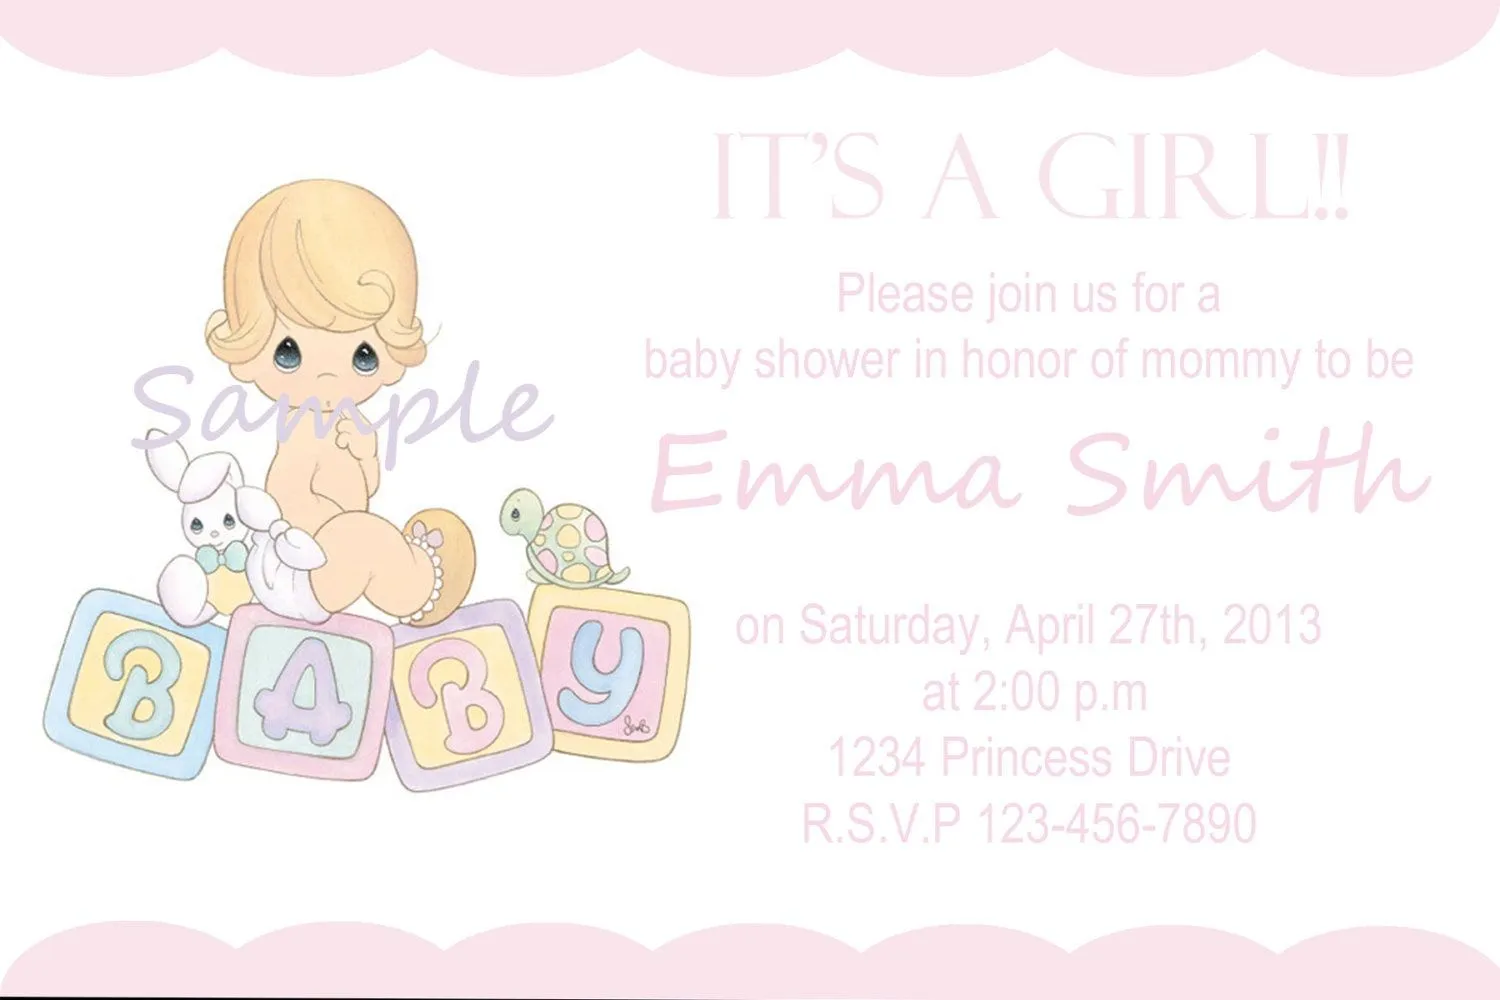 Invitaciónes de los preciosos momentos de baby shower - Imagui